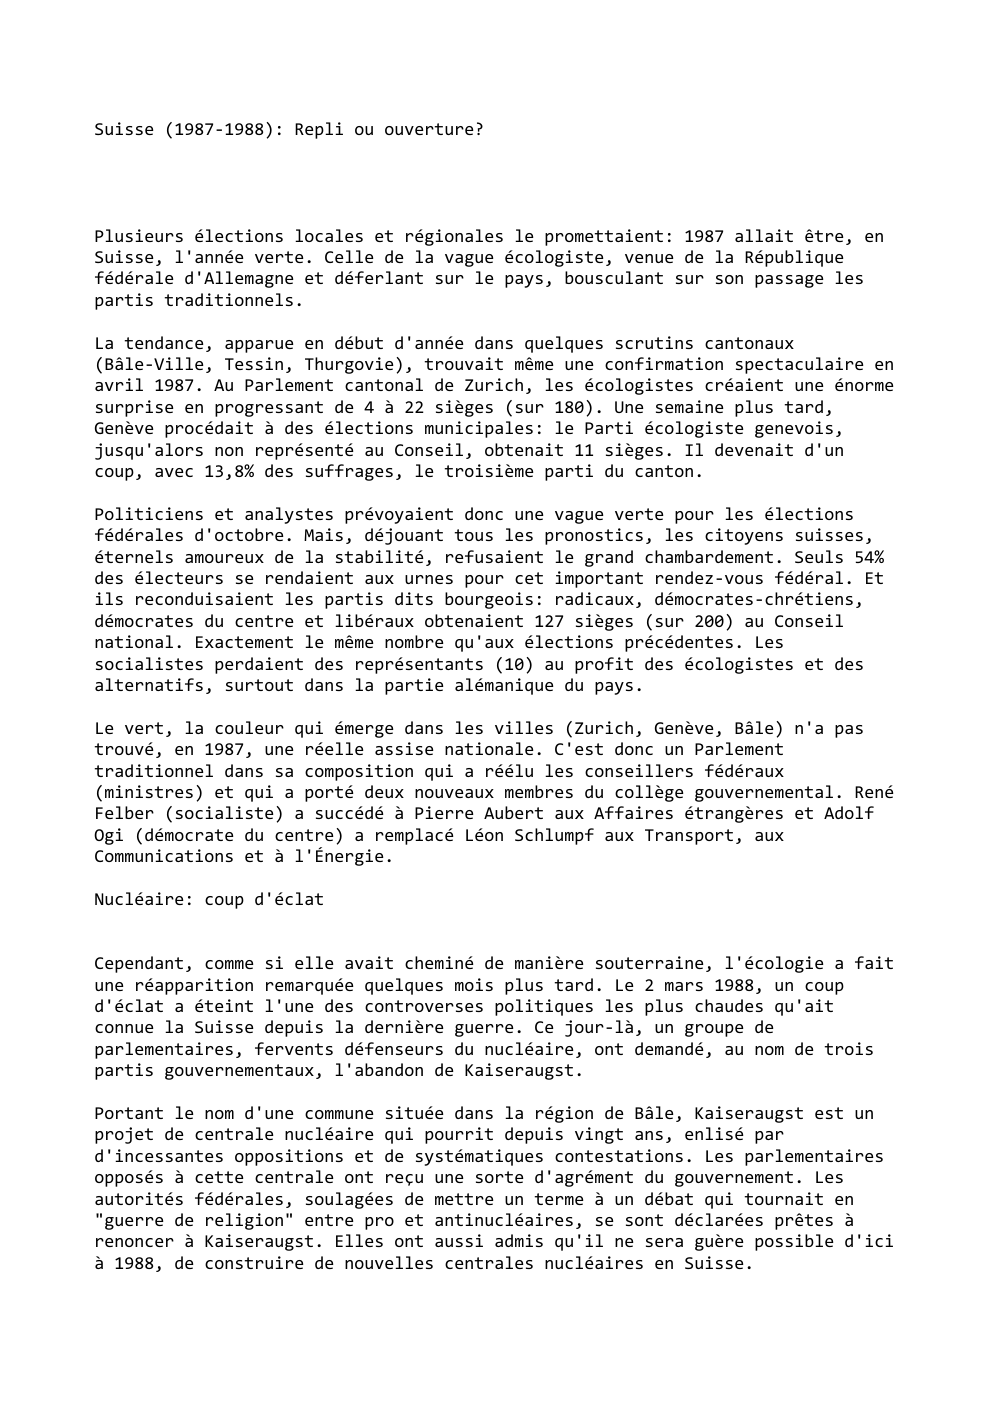 Prévisualisation du document Suisse (1987-1988): Repli ou ouverture?

Plusieurs élections locales et régionales le promettaient: 1987 allait être, en
Suisse, l'année verte. Celle...